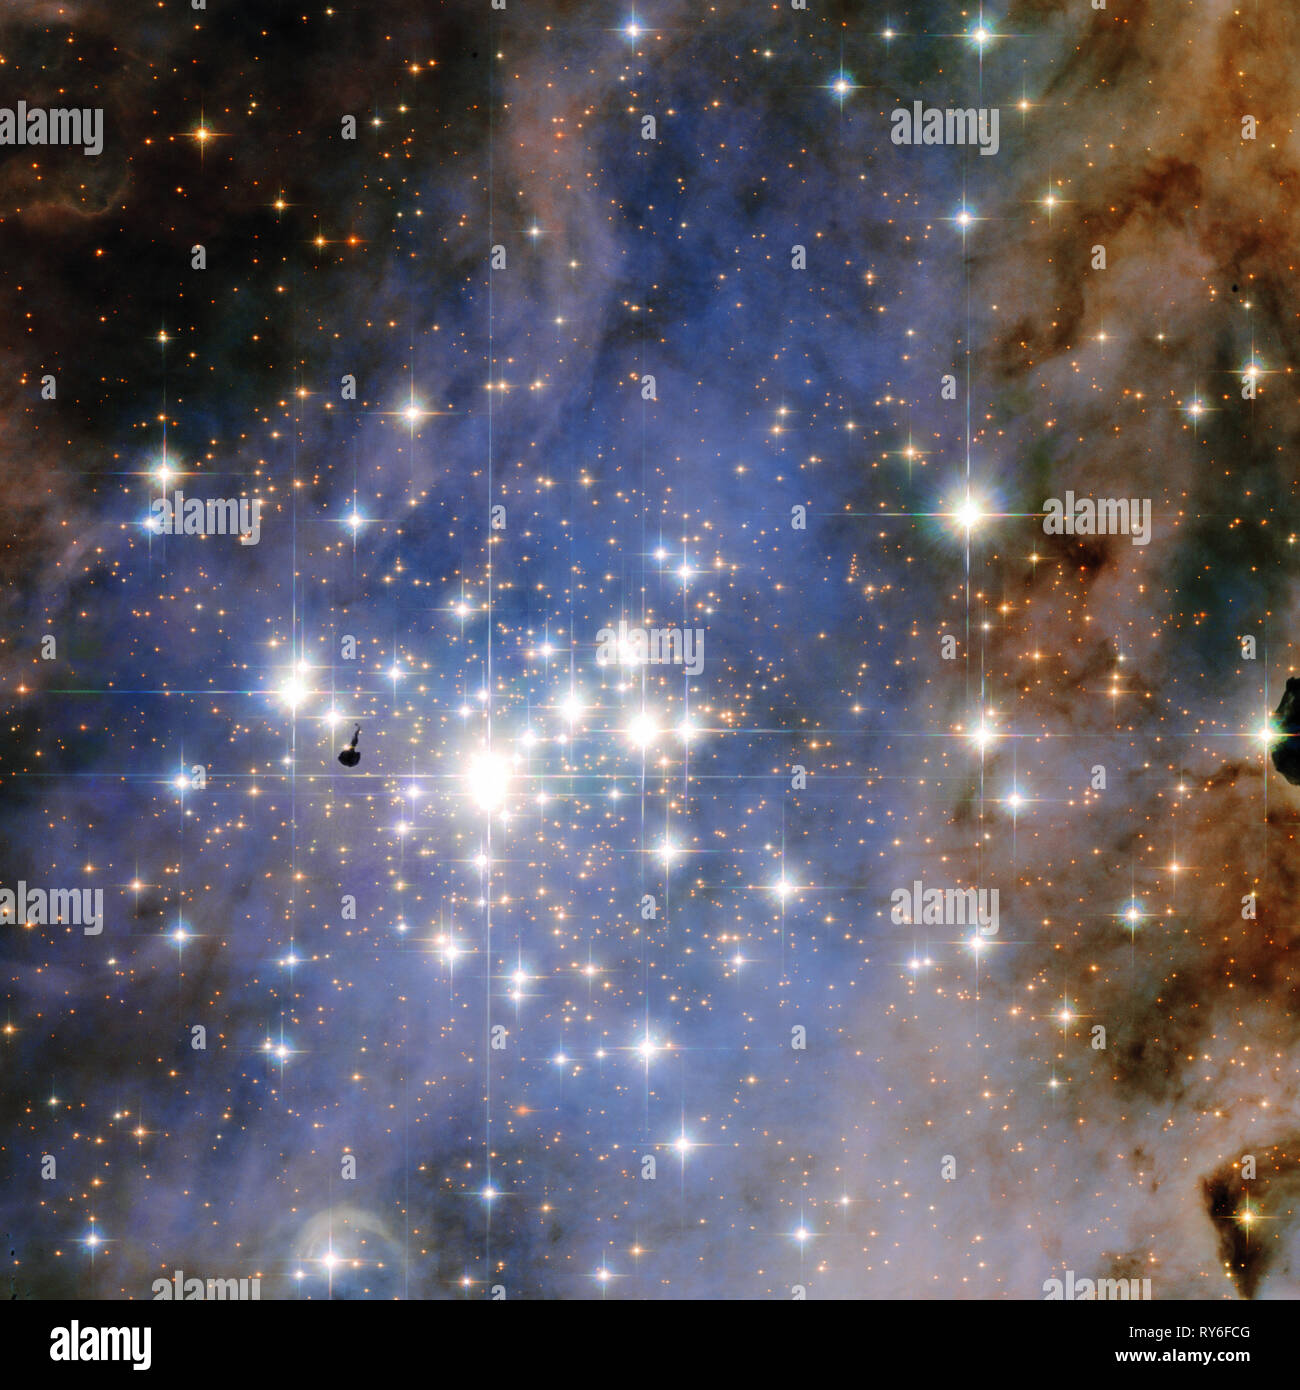 Trumpler 14, una stella enorme formando una regione situata 8.000 anni-luce di distanza nella Carina Nebula, contiene una delle più alte concentrazioni di massiccia, lu Foto Stock